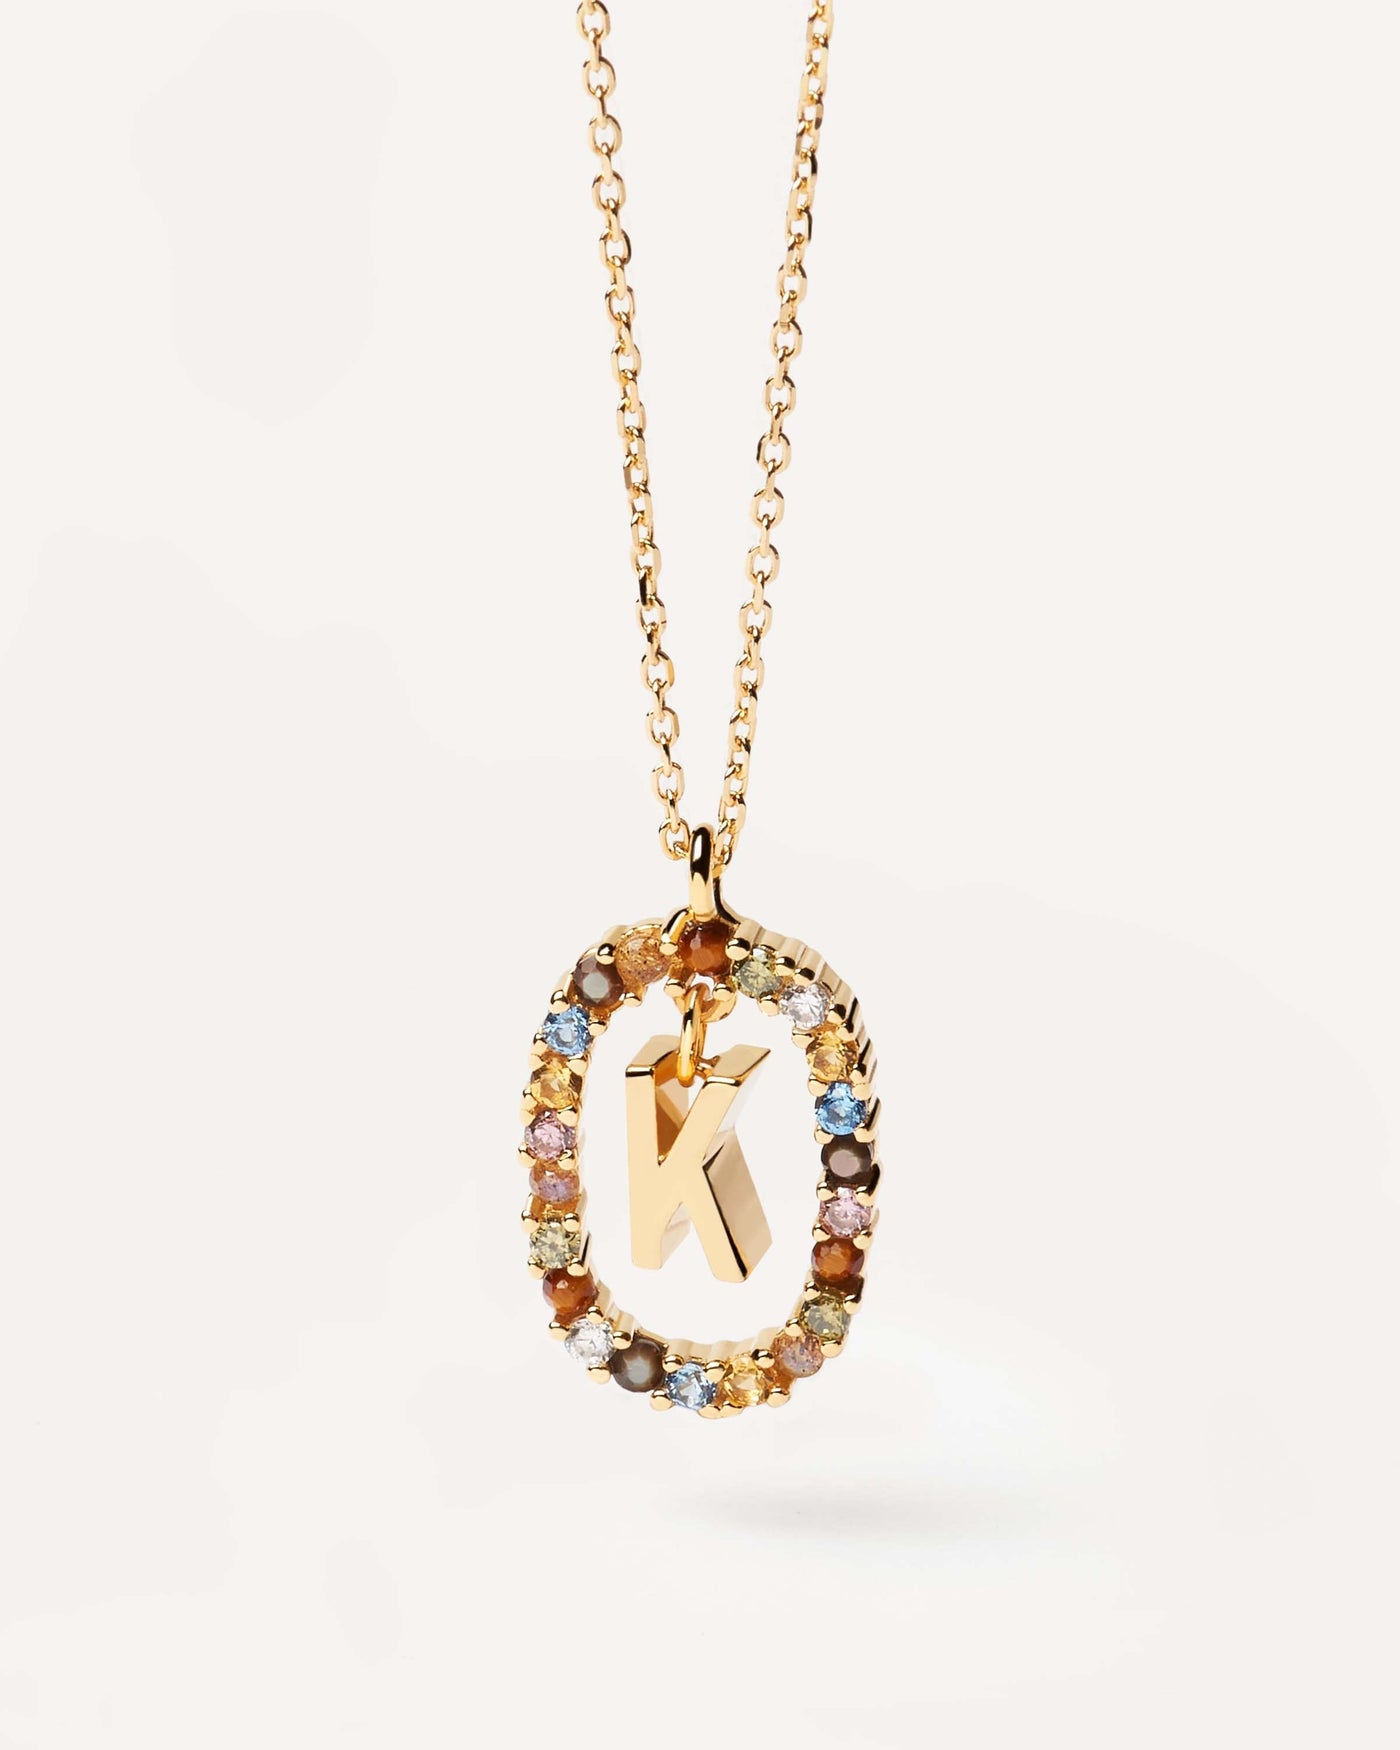 Buchstaben K Halskette. Initiale K-Halskette aus vergoldetem Silber, umgeben von bunten Edelsteinen. Erhalten Sie die neuesten Produkte von PDPAOLA. Geben Sie Ihre Bestellung sicher auf und erhalten Sie diesen Bestseller.